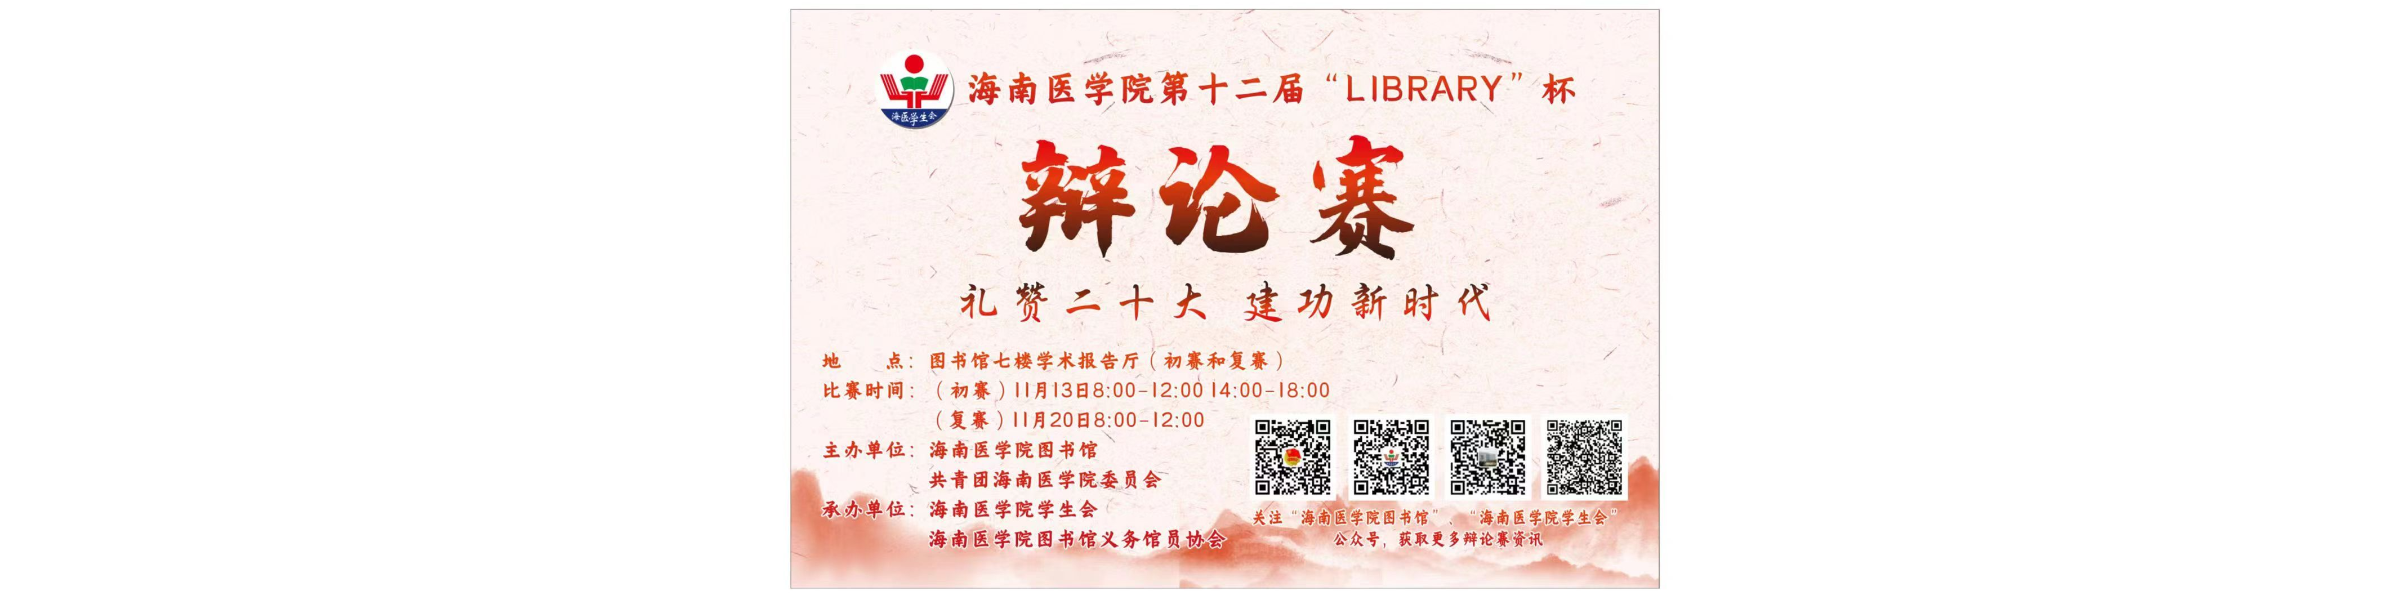 礼赞二十大 建功新时代——海南医学院第十二届"LIBRARY"杯辩论赛11月13日正式开赛！